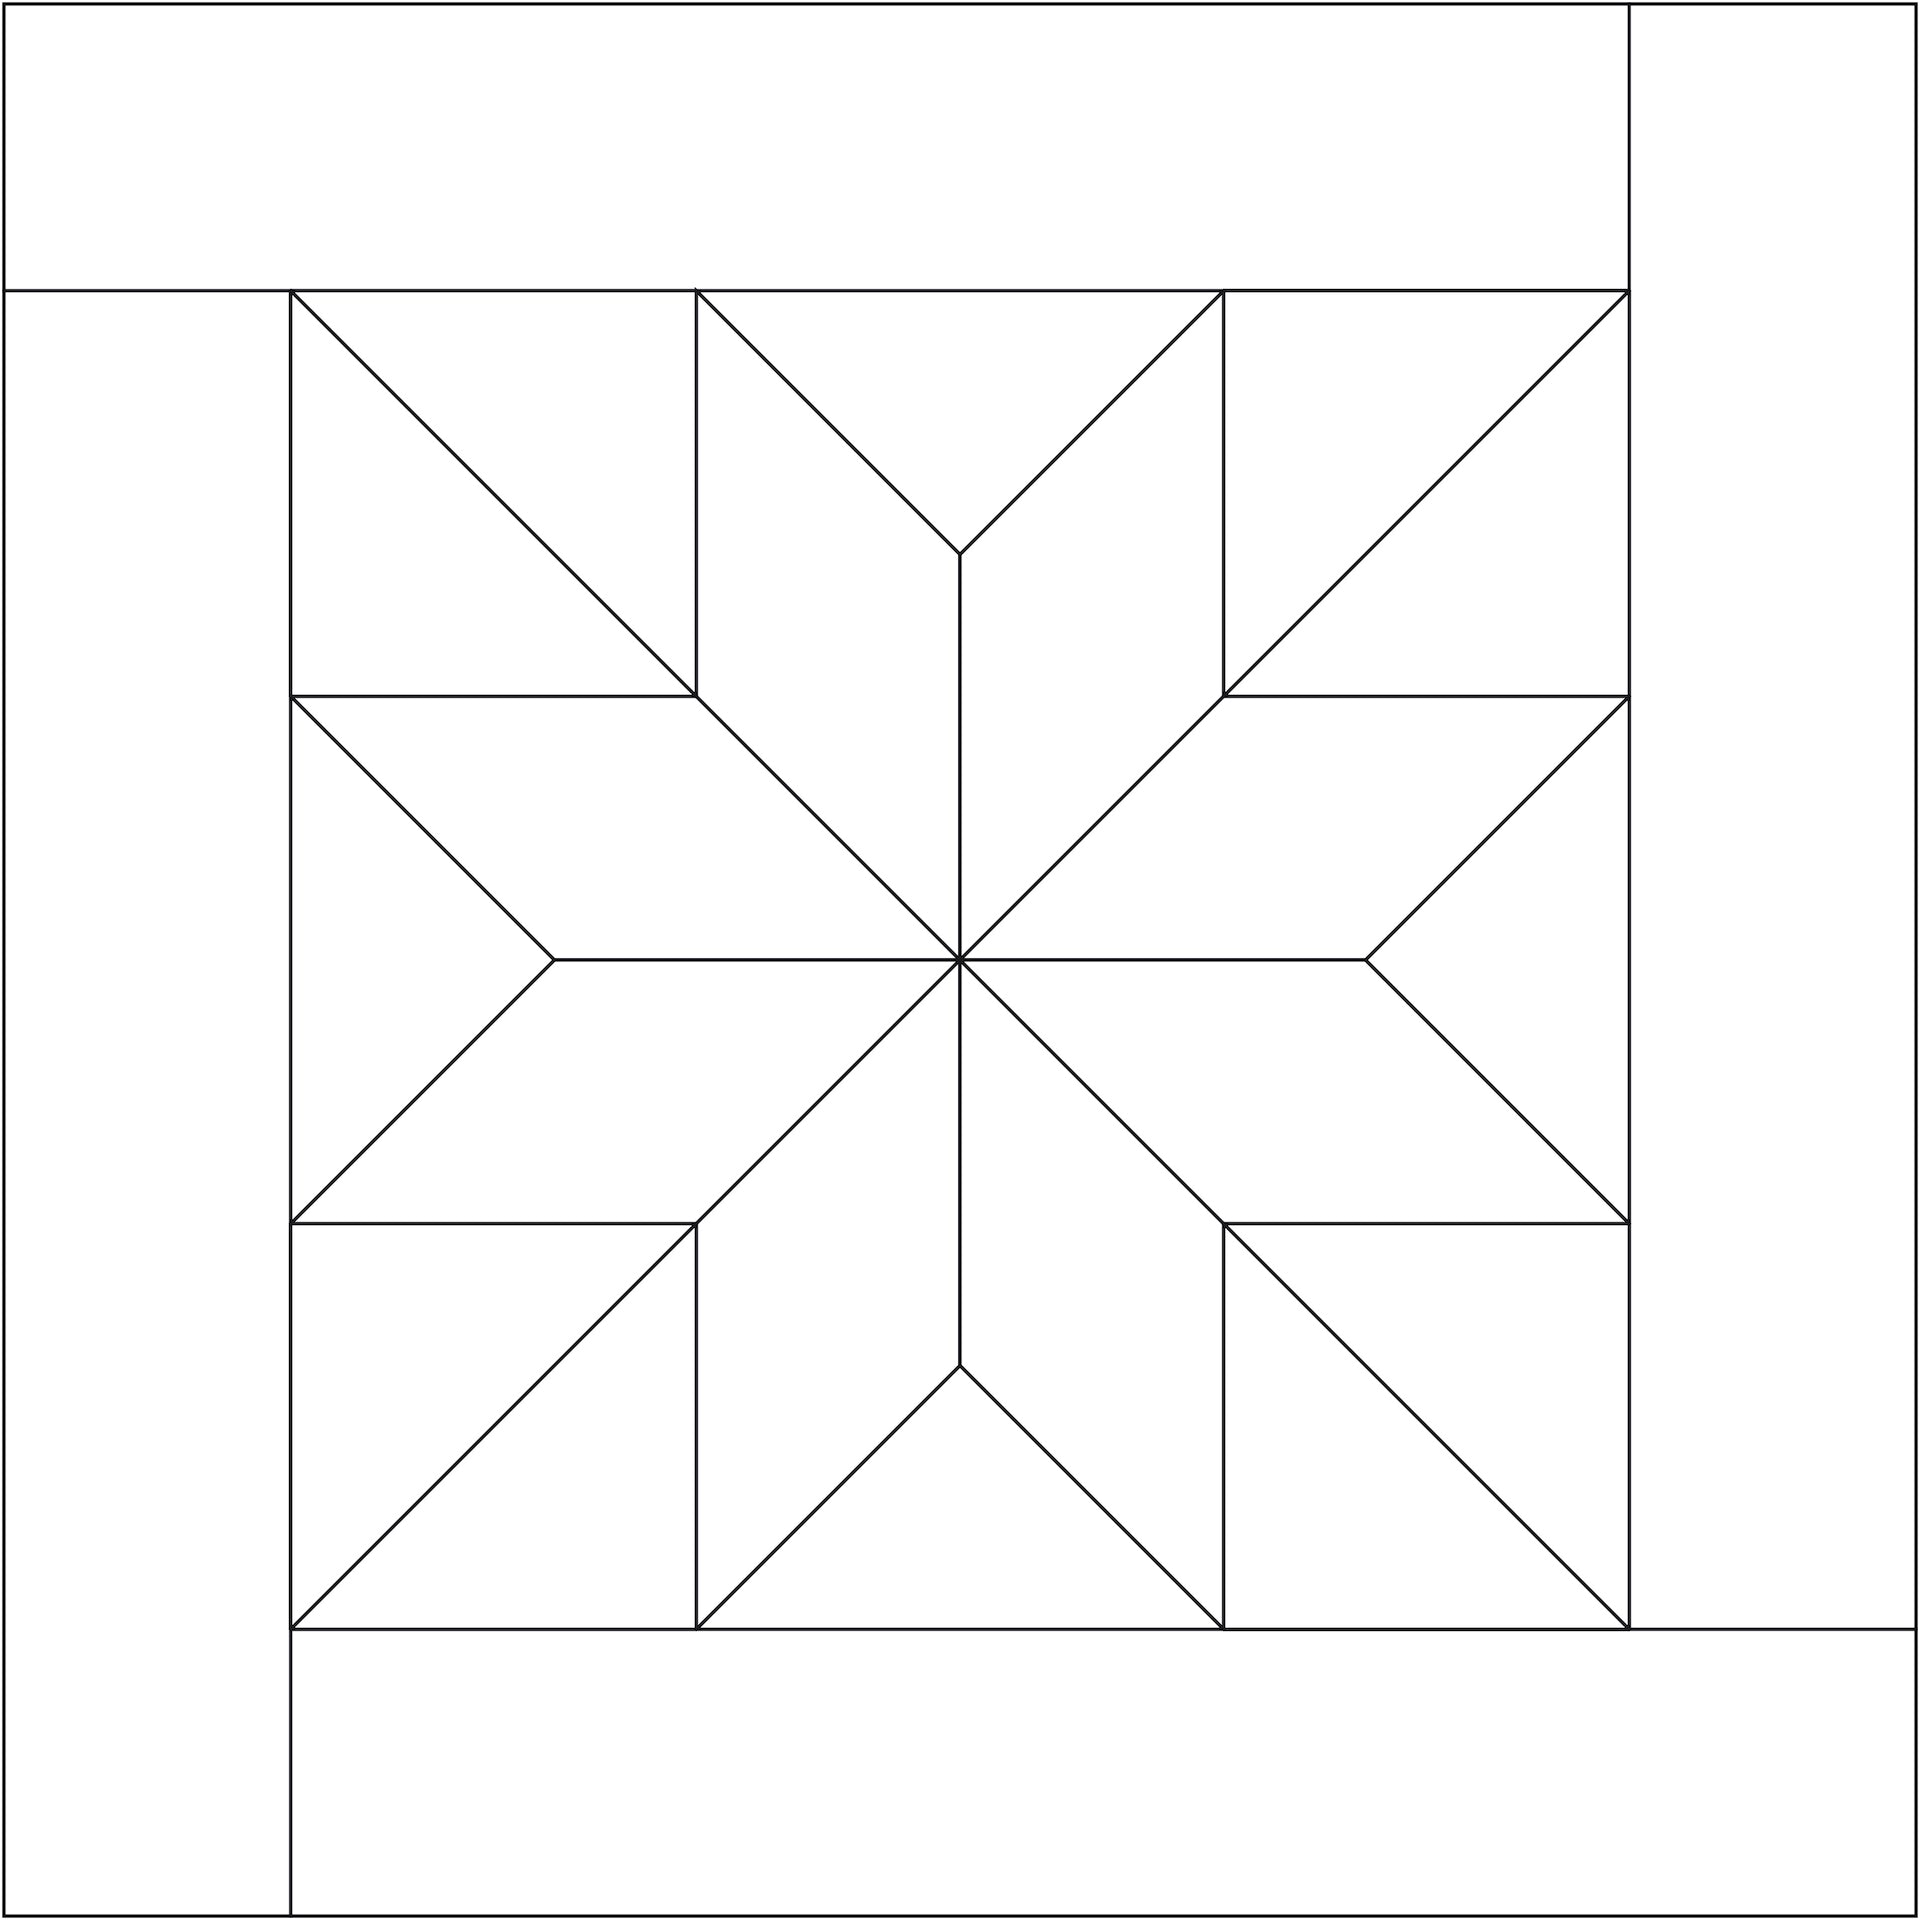 Etaile Patroon is een houten vloer patroon die als kunstwerk in de ruimte ligt